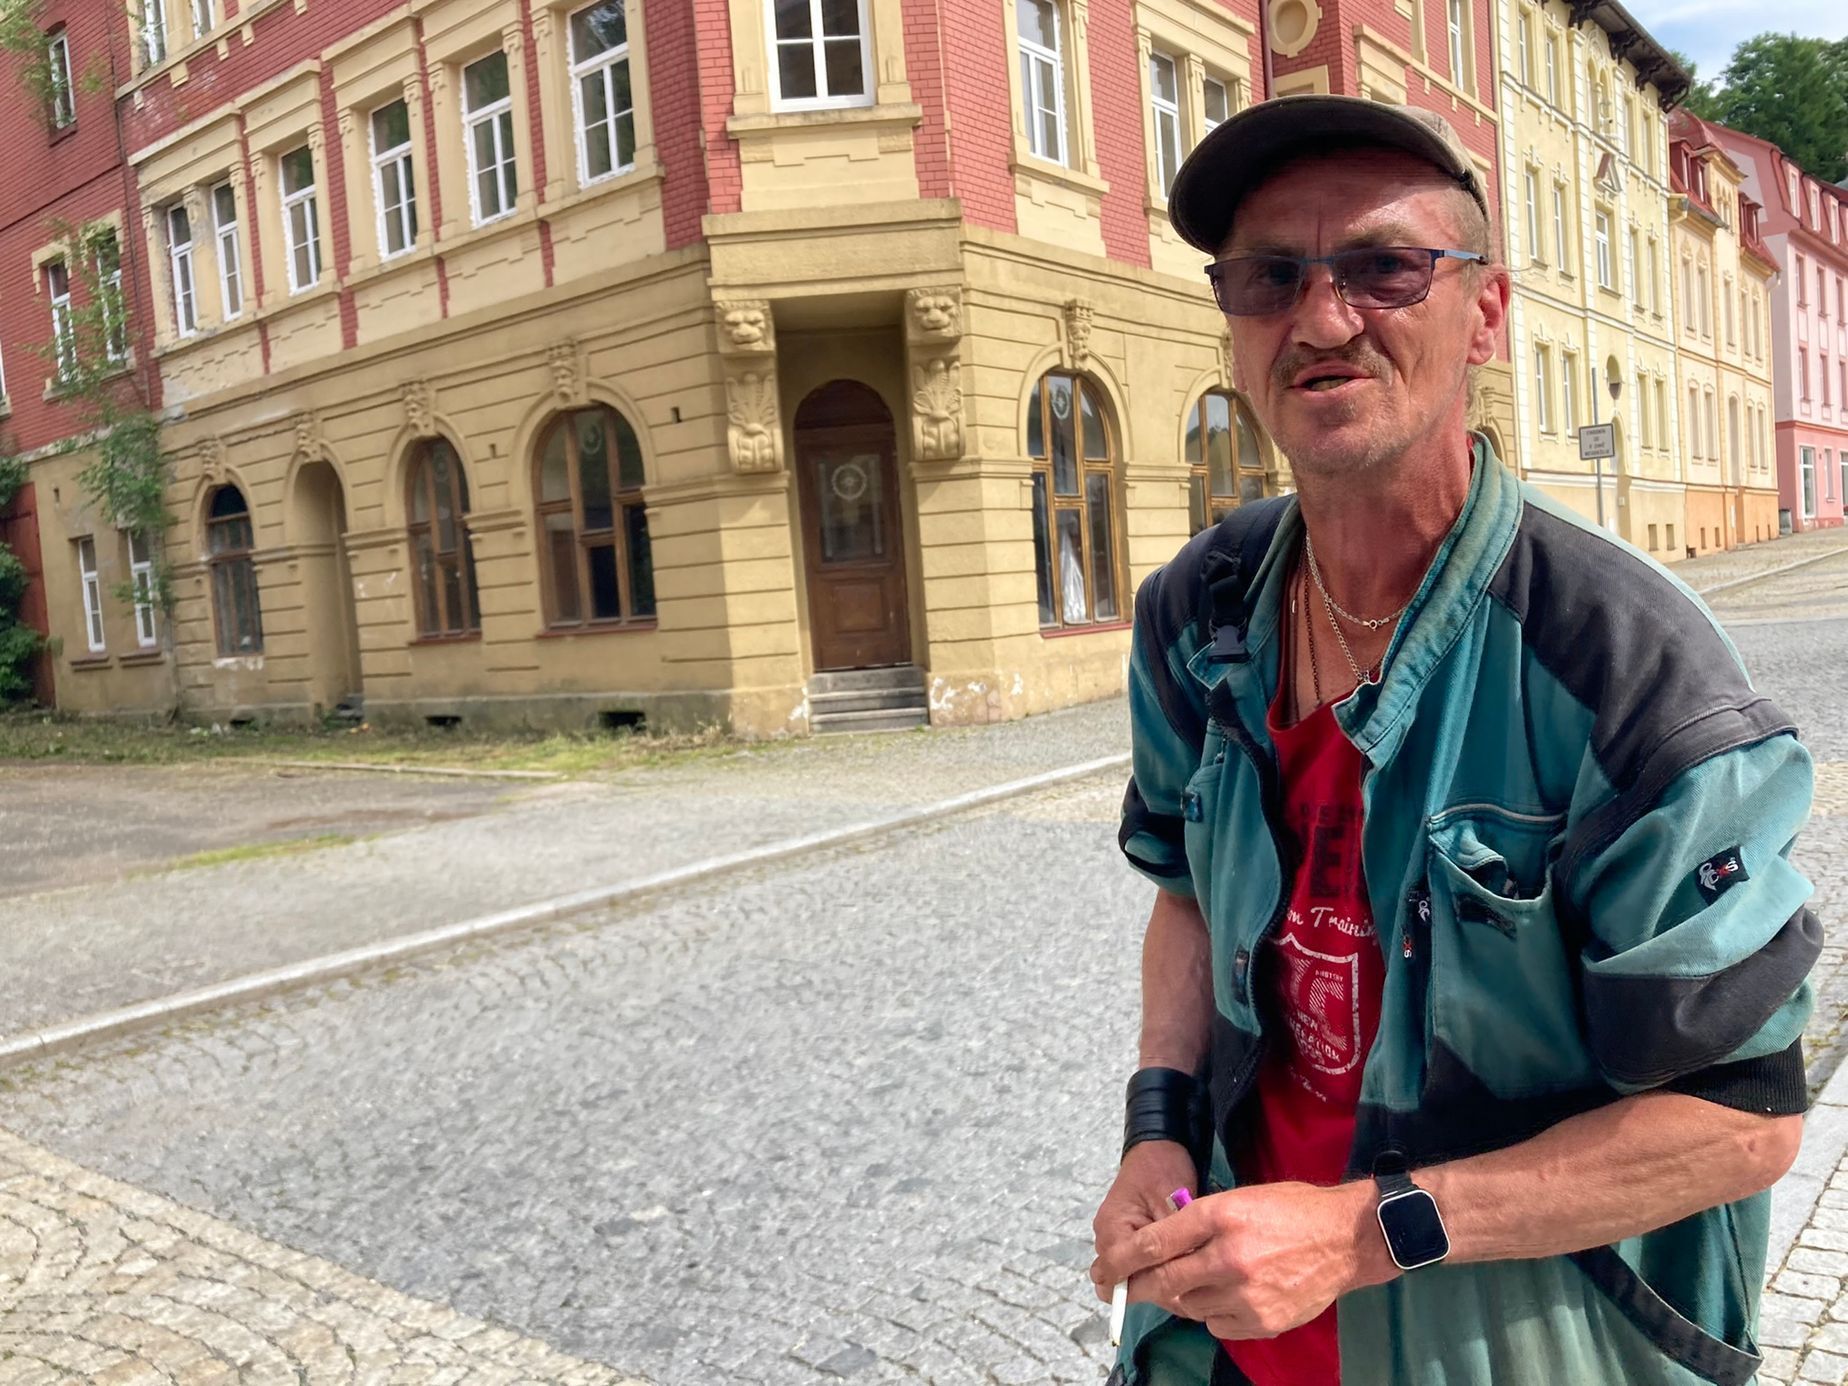 Je tady až příliš velký klid, říká pan Vladimír, který prochází před budovou, kde Jiří Menzel natáčel jednu ze scén filmu Obsluhoval jsem anglického krále.